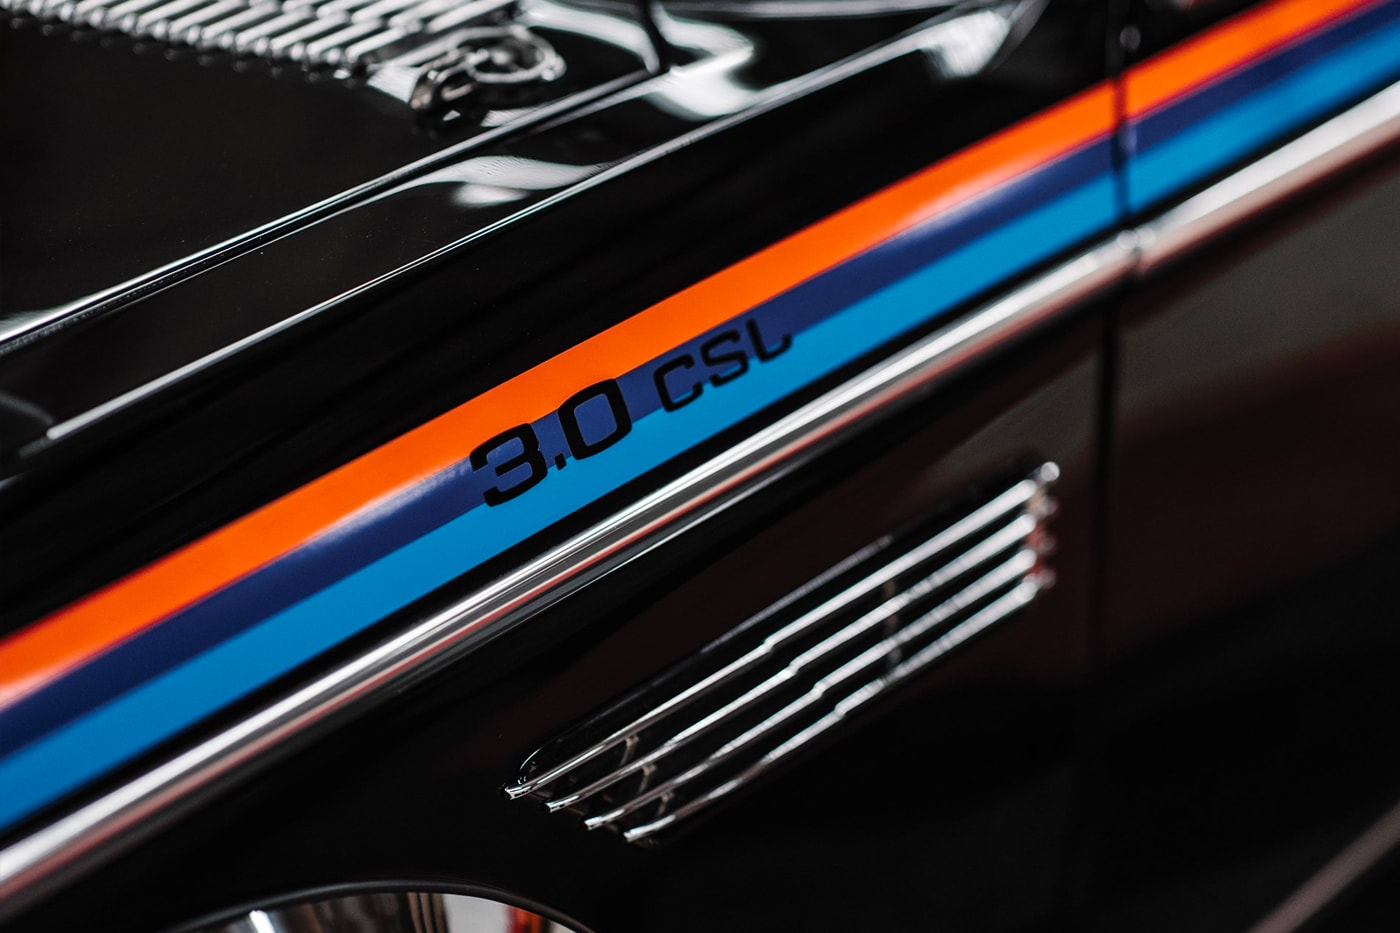 1972 BMW 3.0 CSL RM Sotheby's Auction  For sale buy now bid black retrofuturistic motorsport automotive car e9 e24 